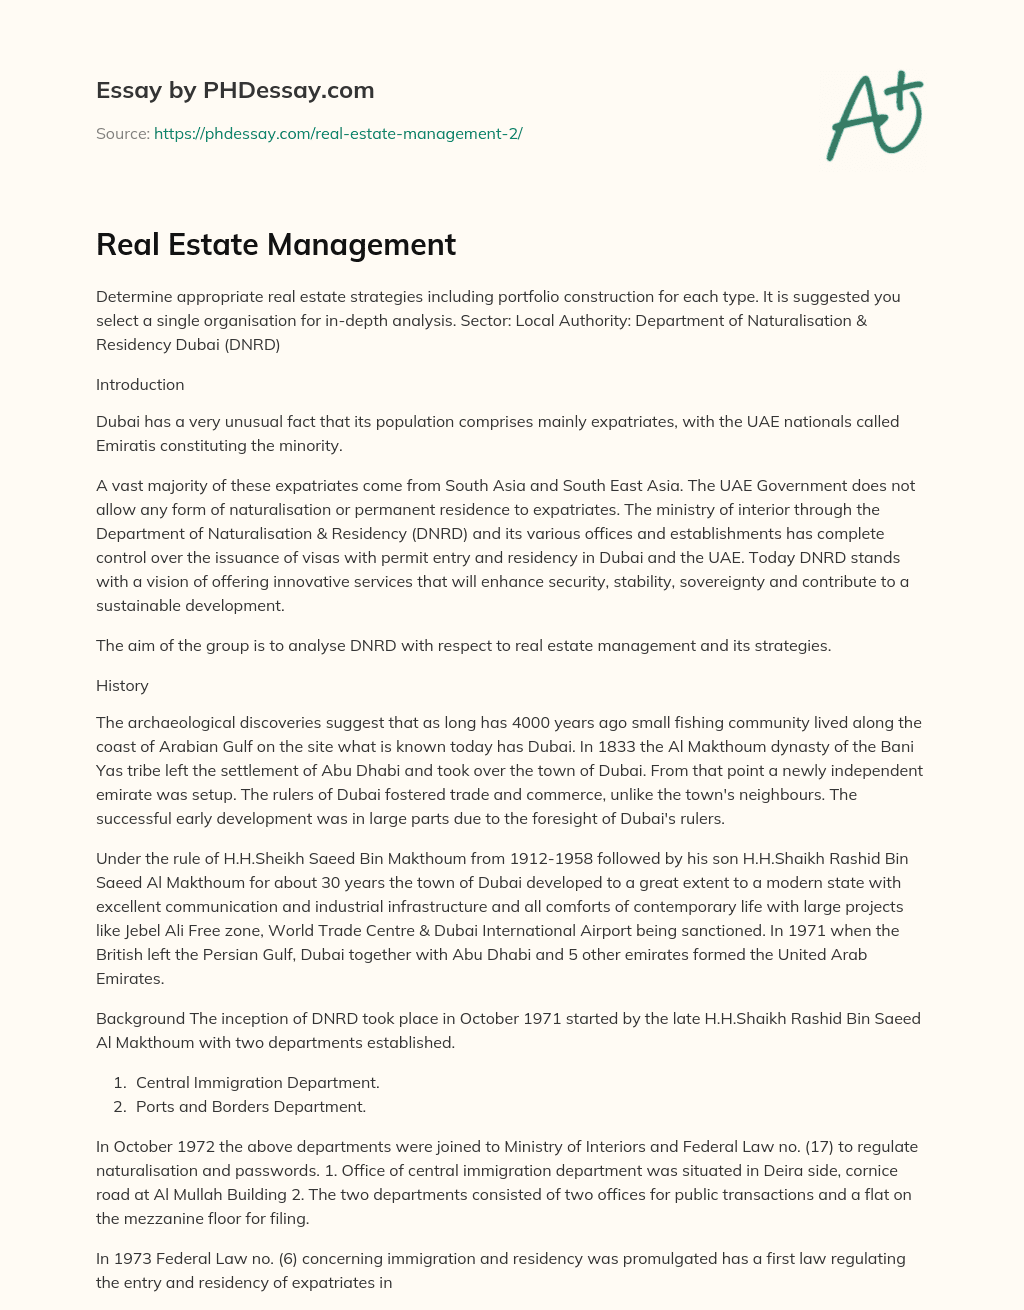 Real Estate Management essay